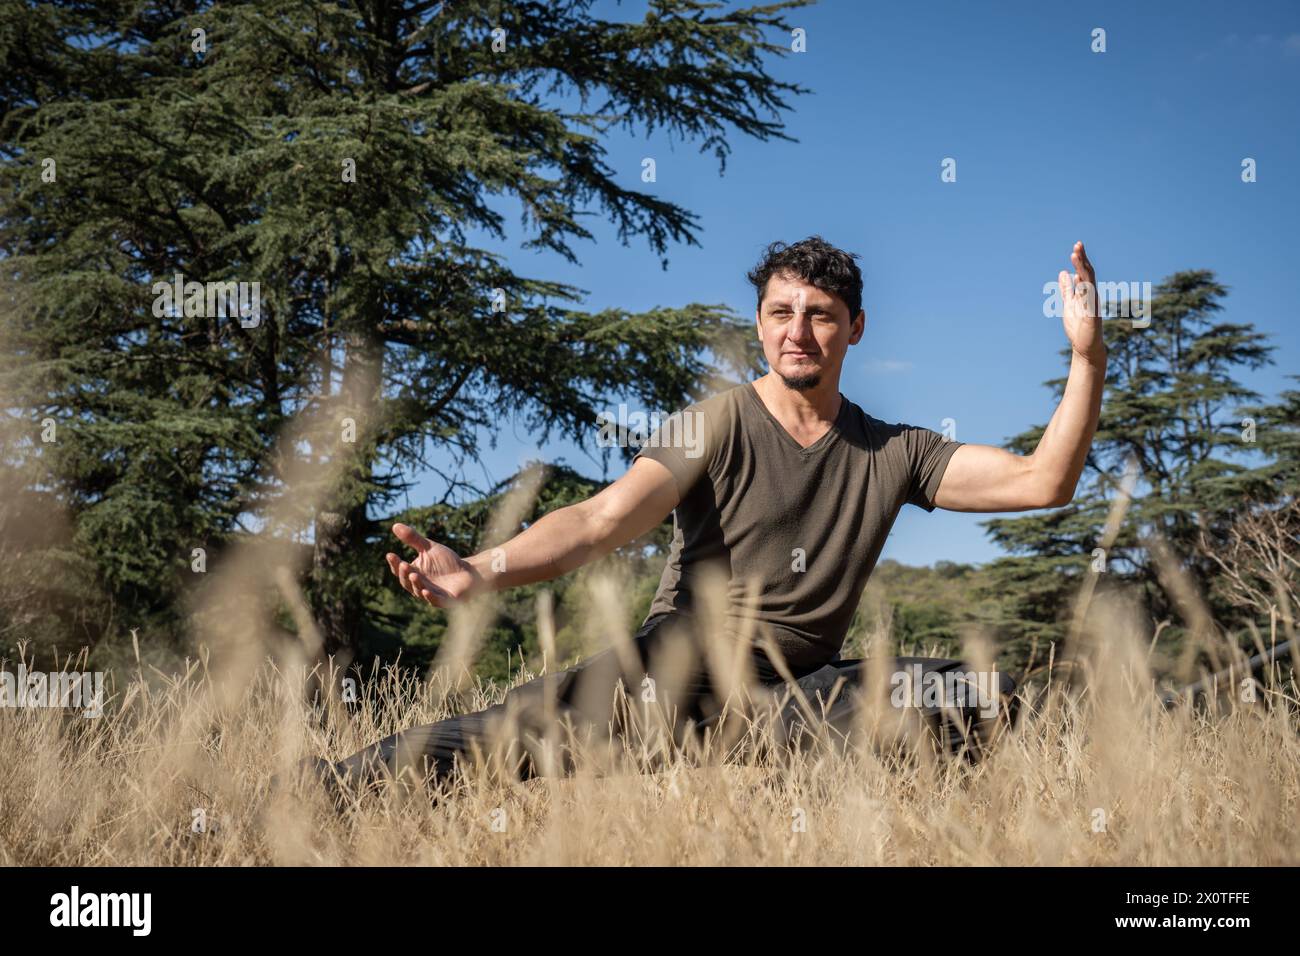 Un homme caucasien d'âge moyen pratique le Kung Fu sur une colline, effectuant des exercices d'étirement, d'équilibre et de force. Banque D'Images